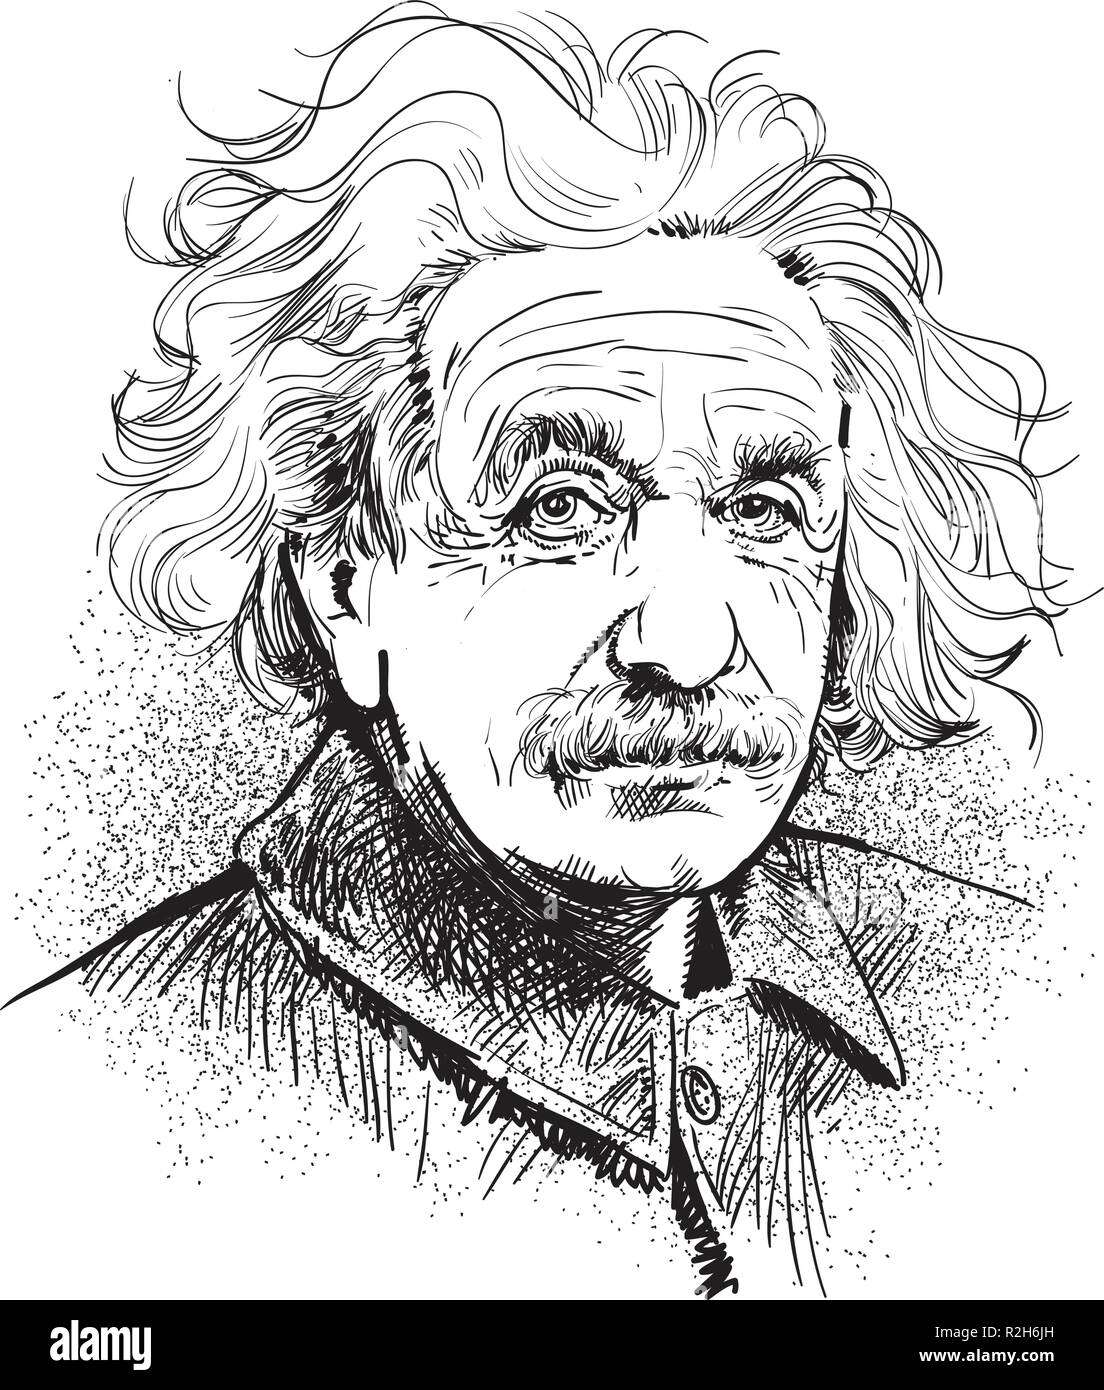 Albert Einstein le portrait dans l'art de l'illustration. Il (1879-1955) était un physicien théoricien américain d'origine allemande qui a développé la théorie de la relativité. Illustration de Vecteur